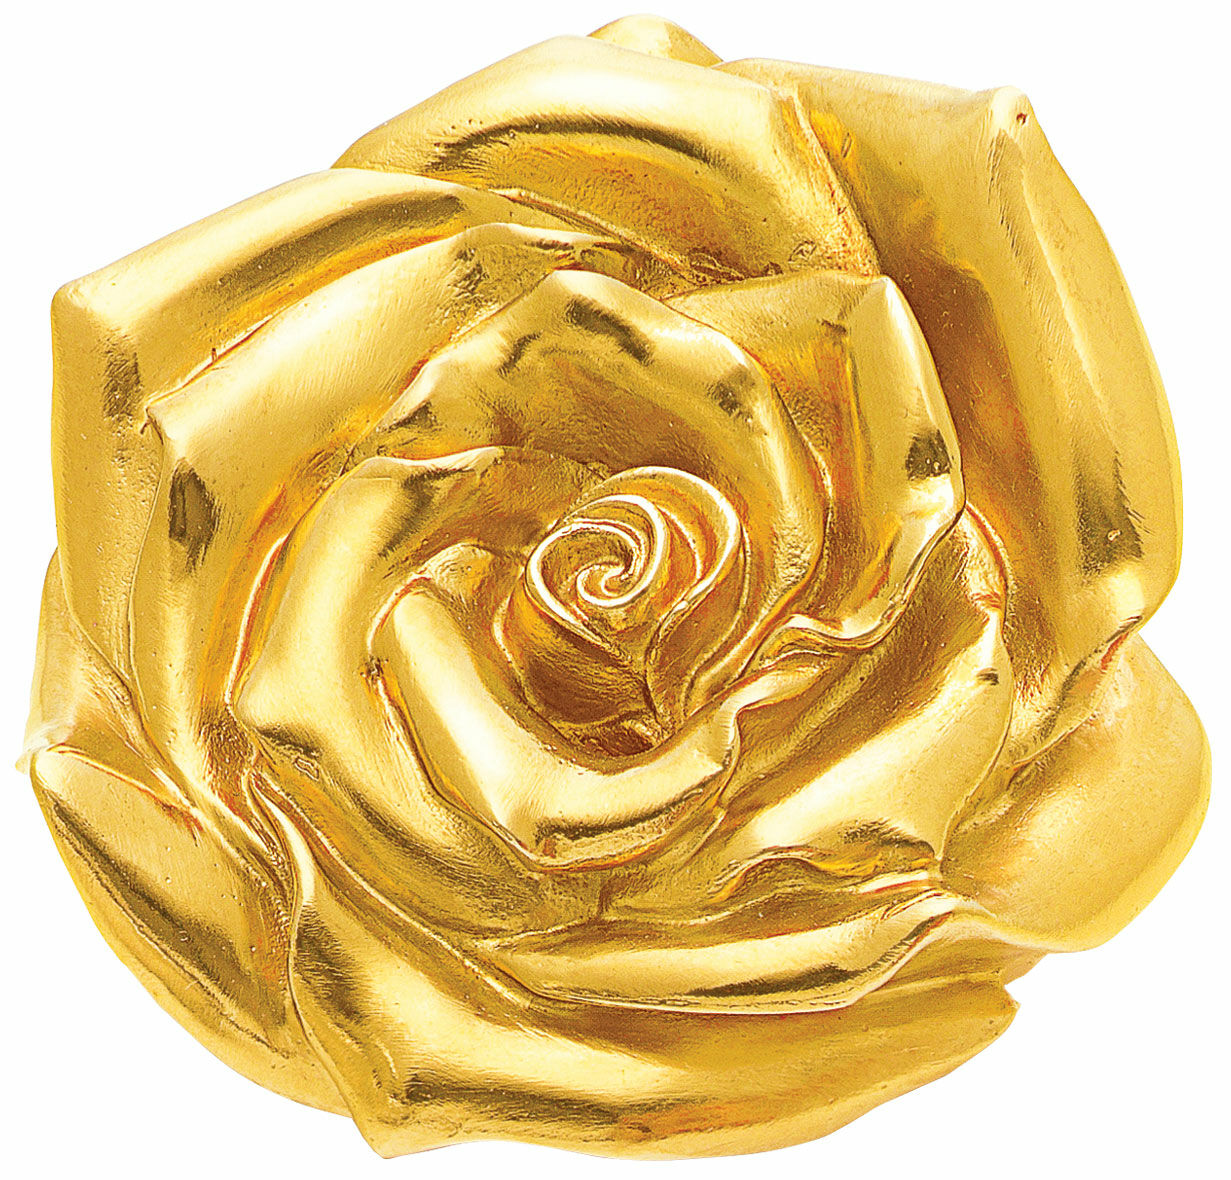 Sculpture "Rose" (2012), version plaquée or jaune von Ottmar Hörl